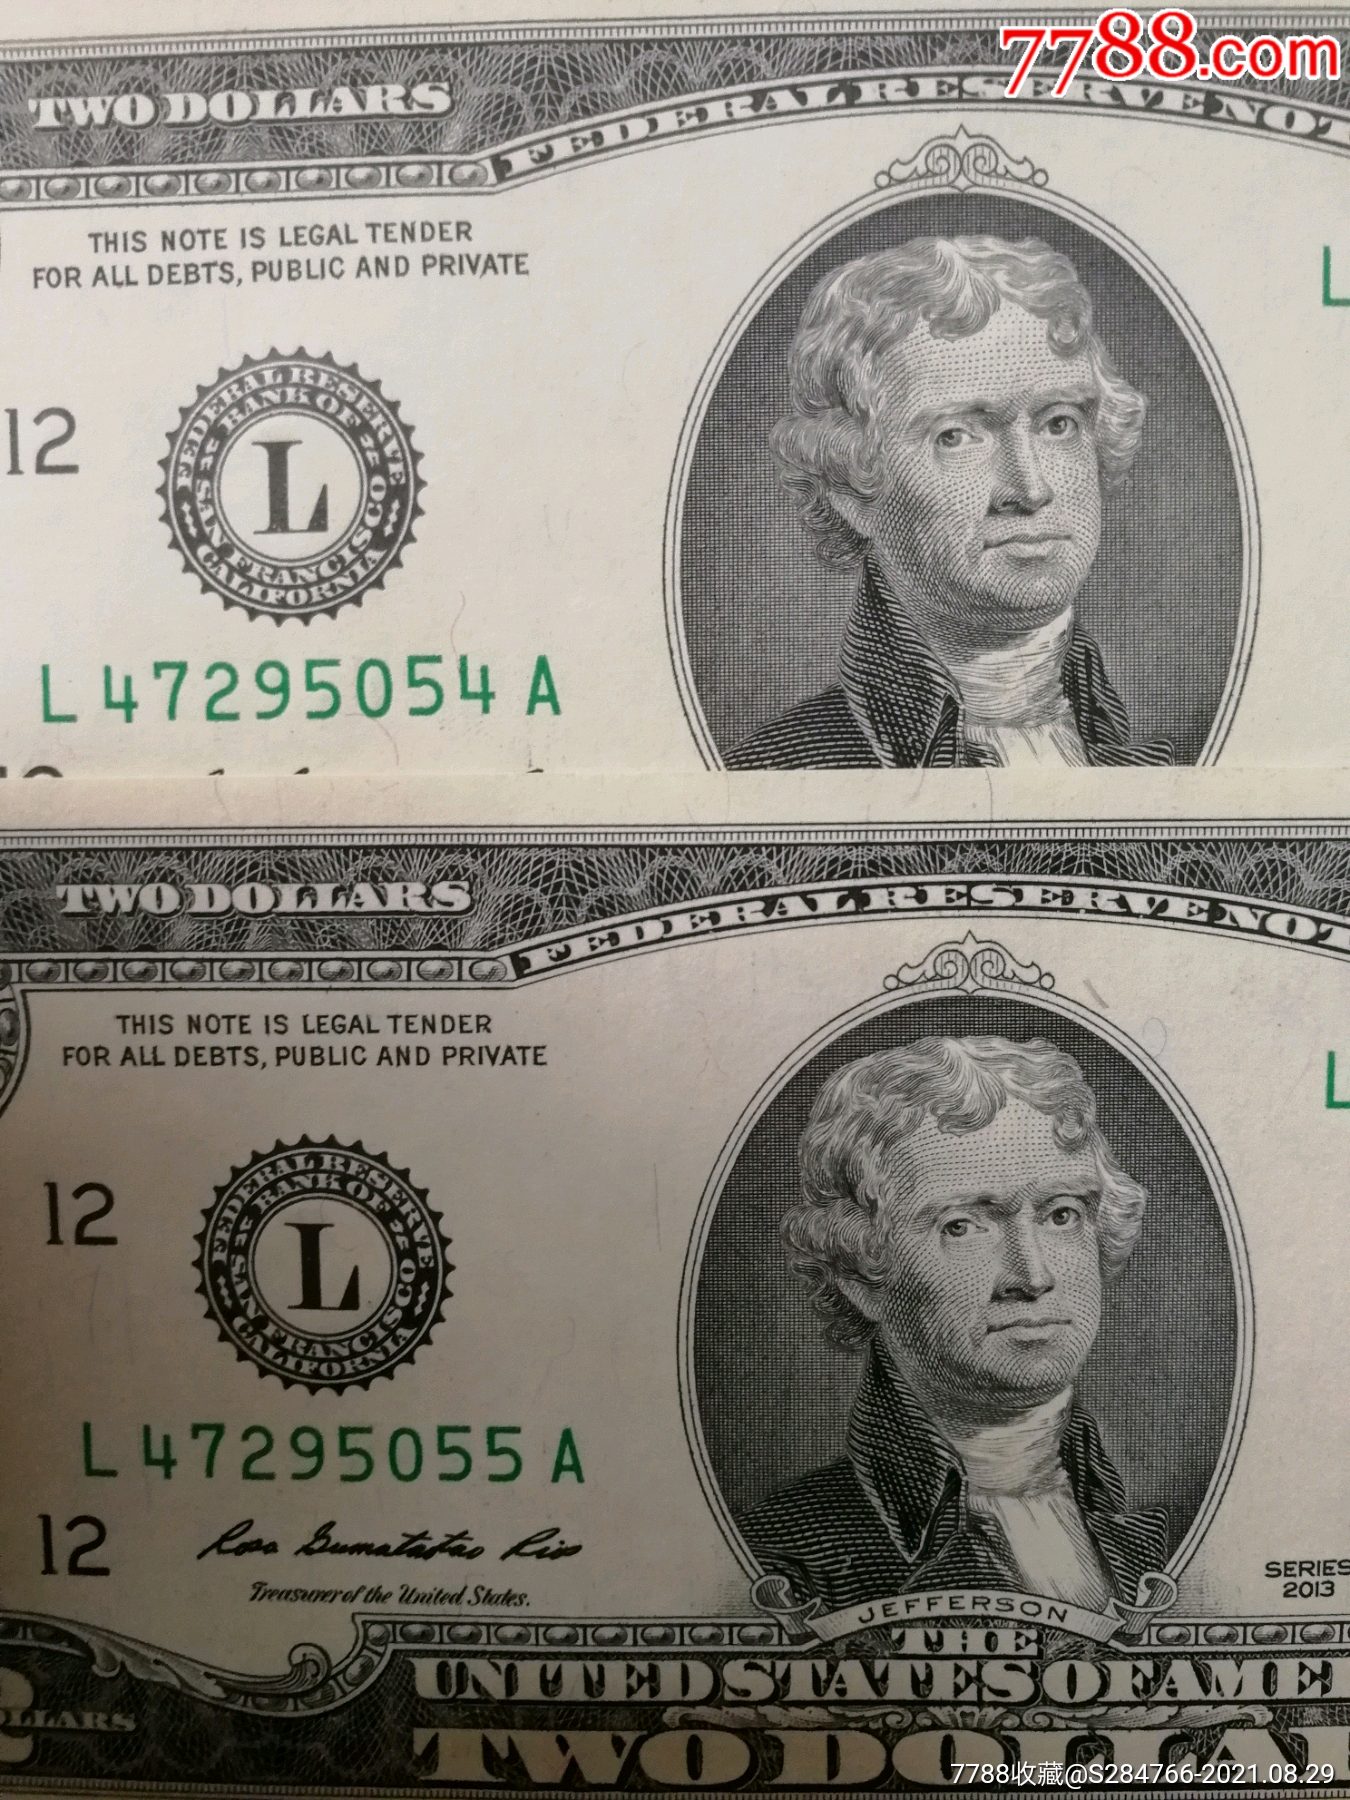 全新两张连号2013年版2美元纸币